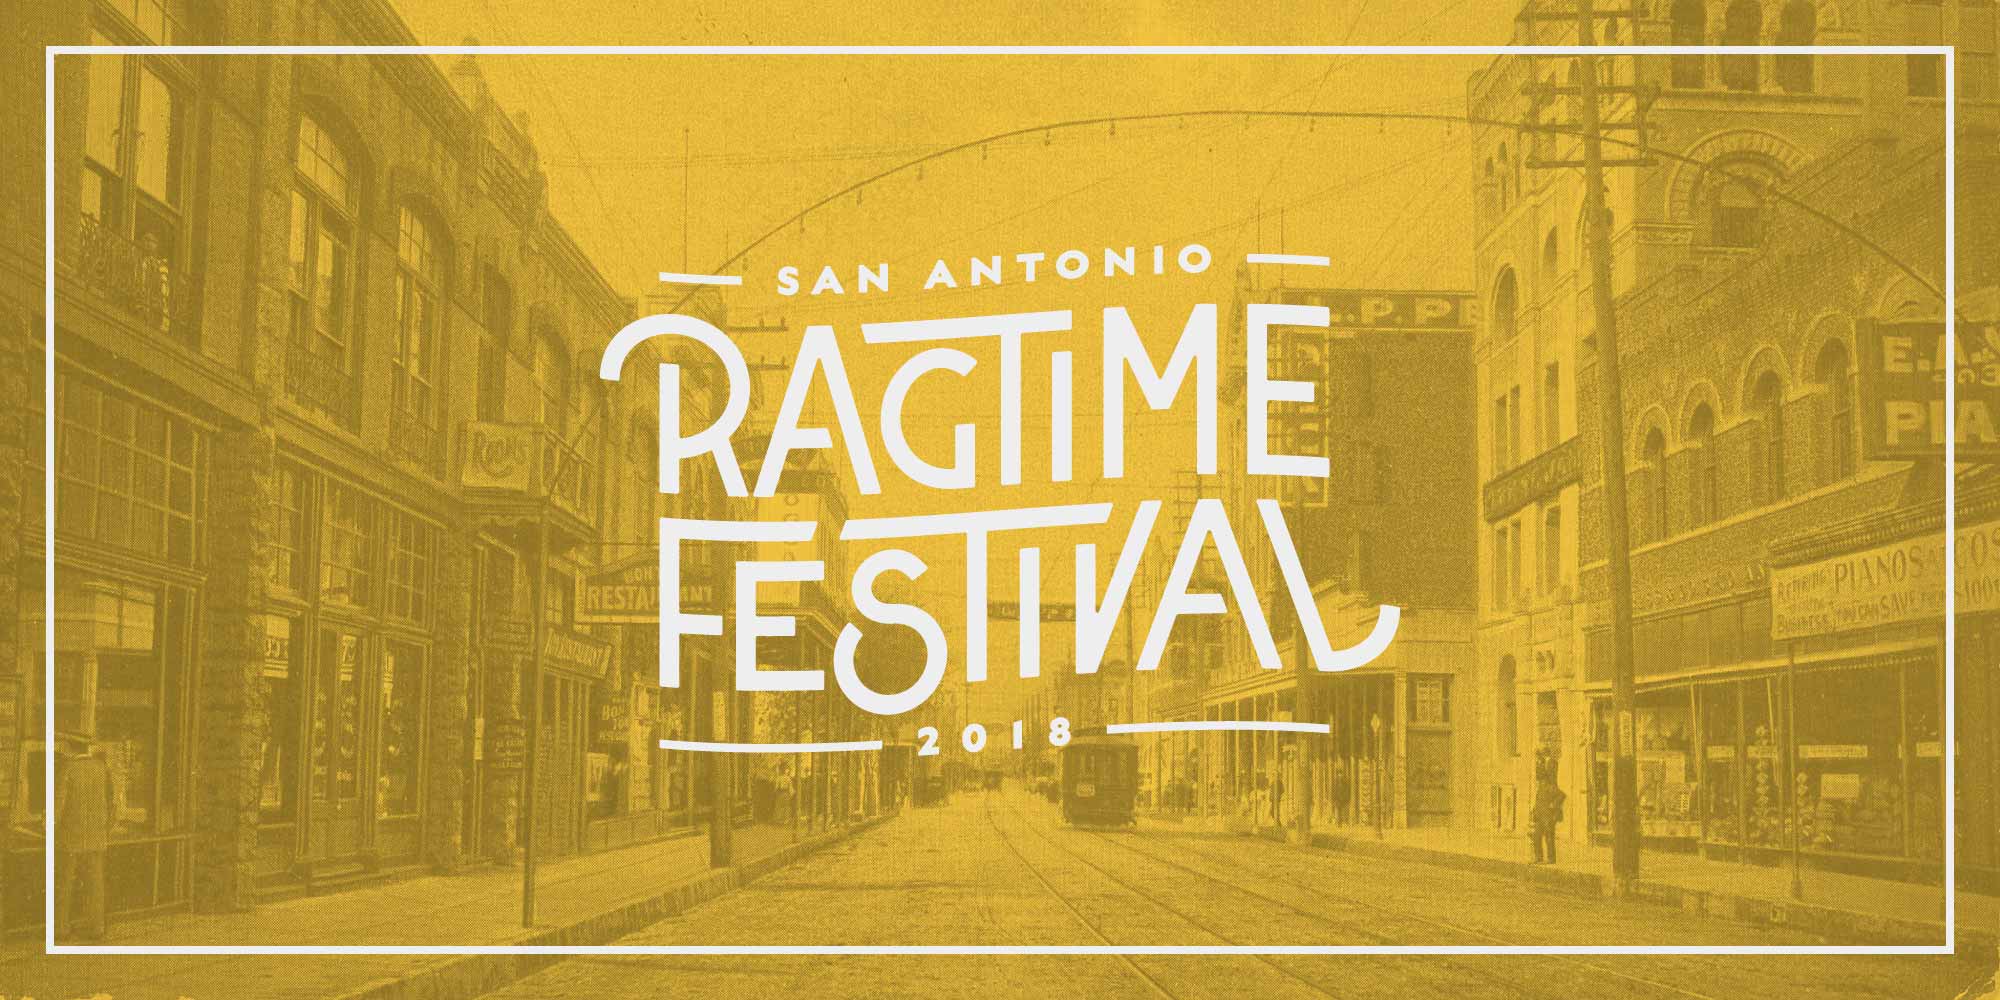 2018 San Antonio Ragtime Festival logo